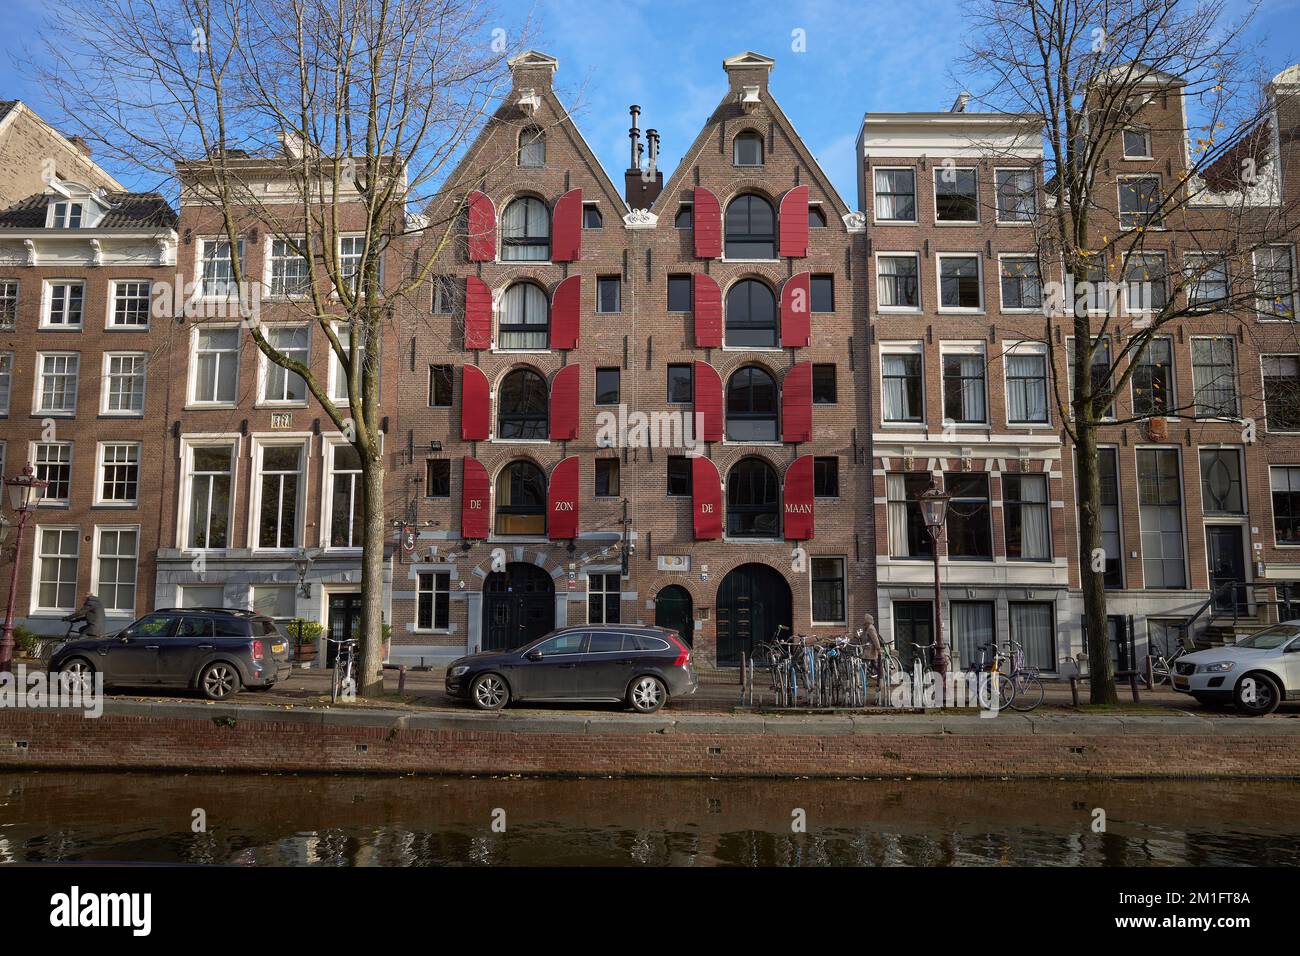 Blick auf die Gebäude in der Reguliersgracht, Amsterdam. Stockfoto